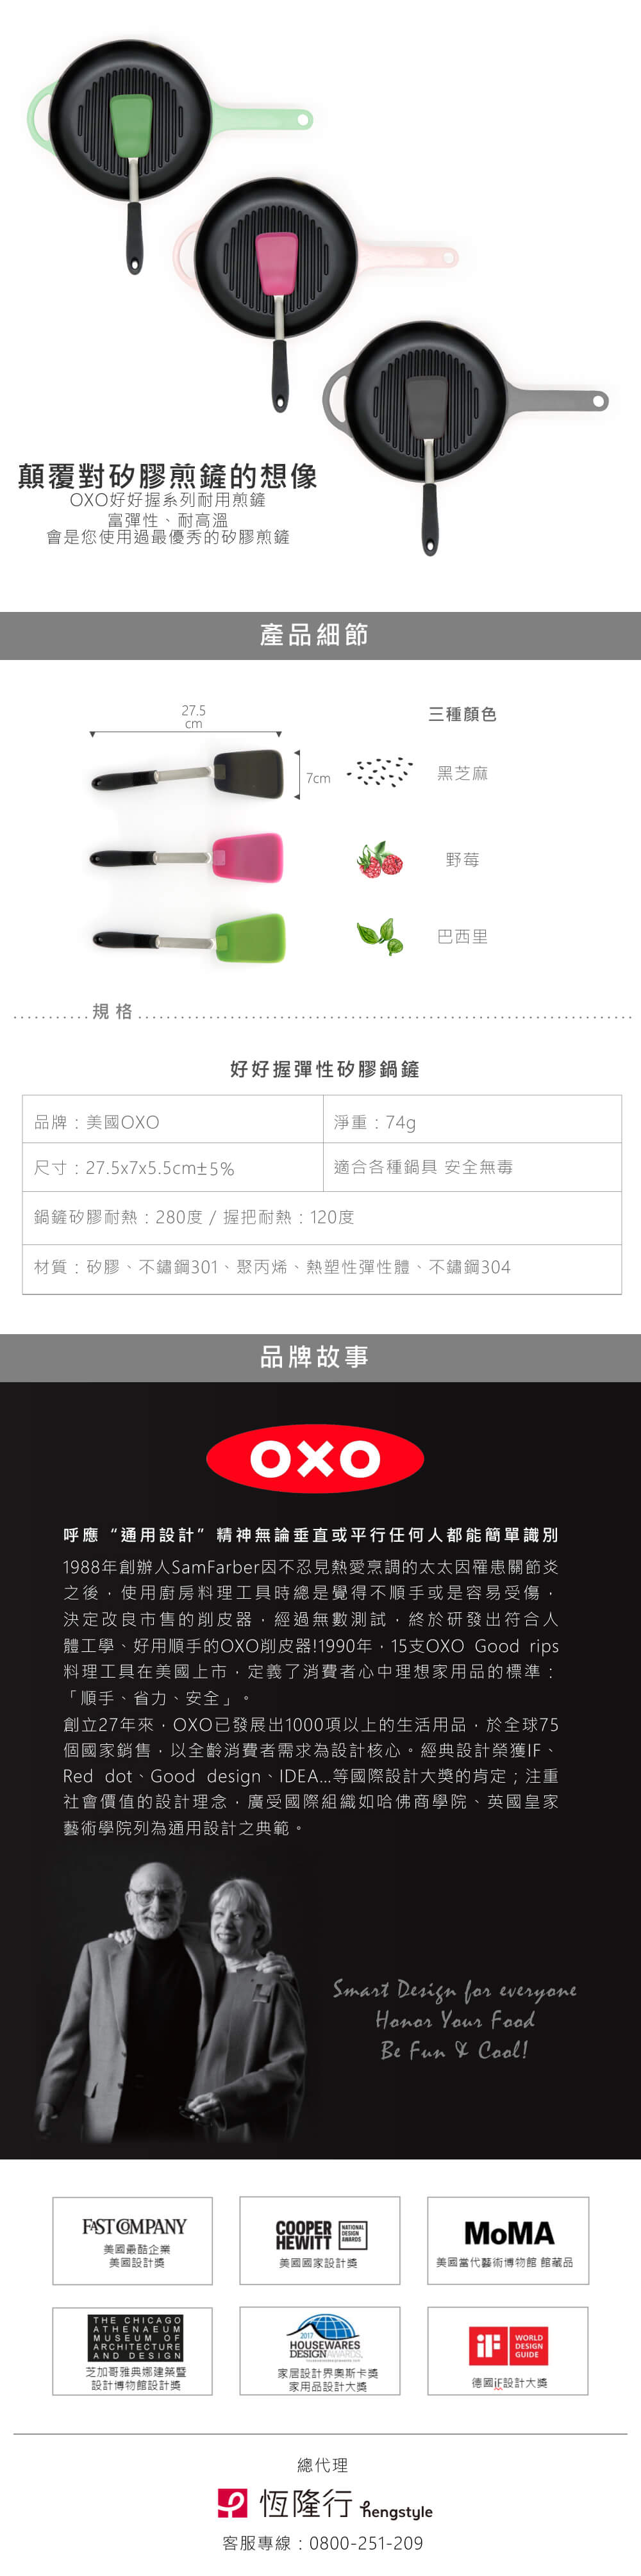 OXO 好好握彈性矽膠鍋鏟-野莓/巴西里/黑芝麻(福利品)優